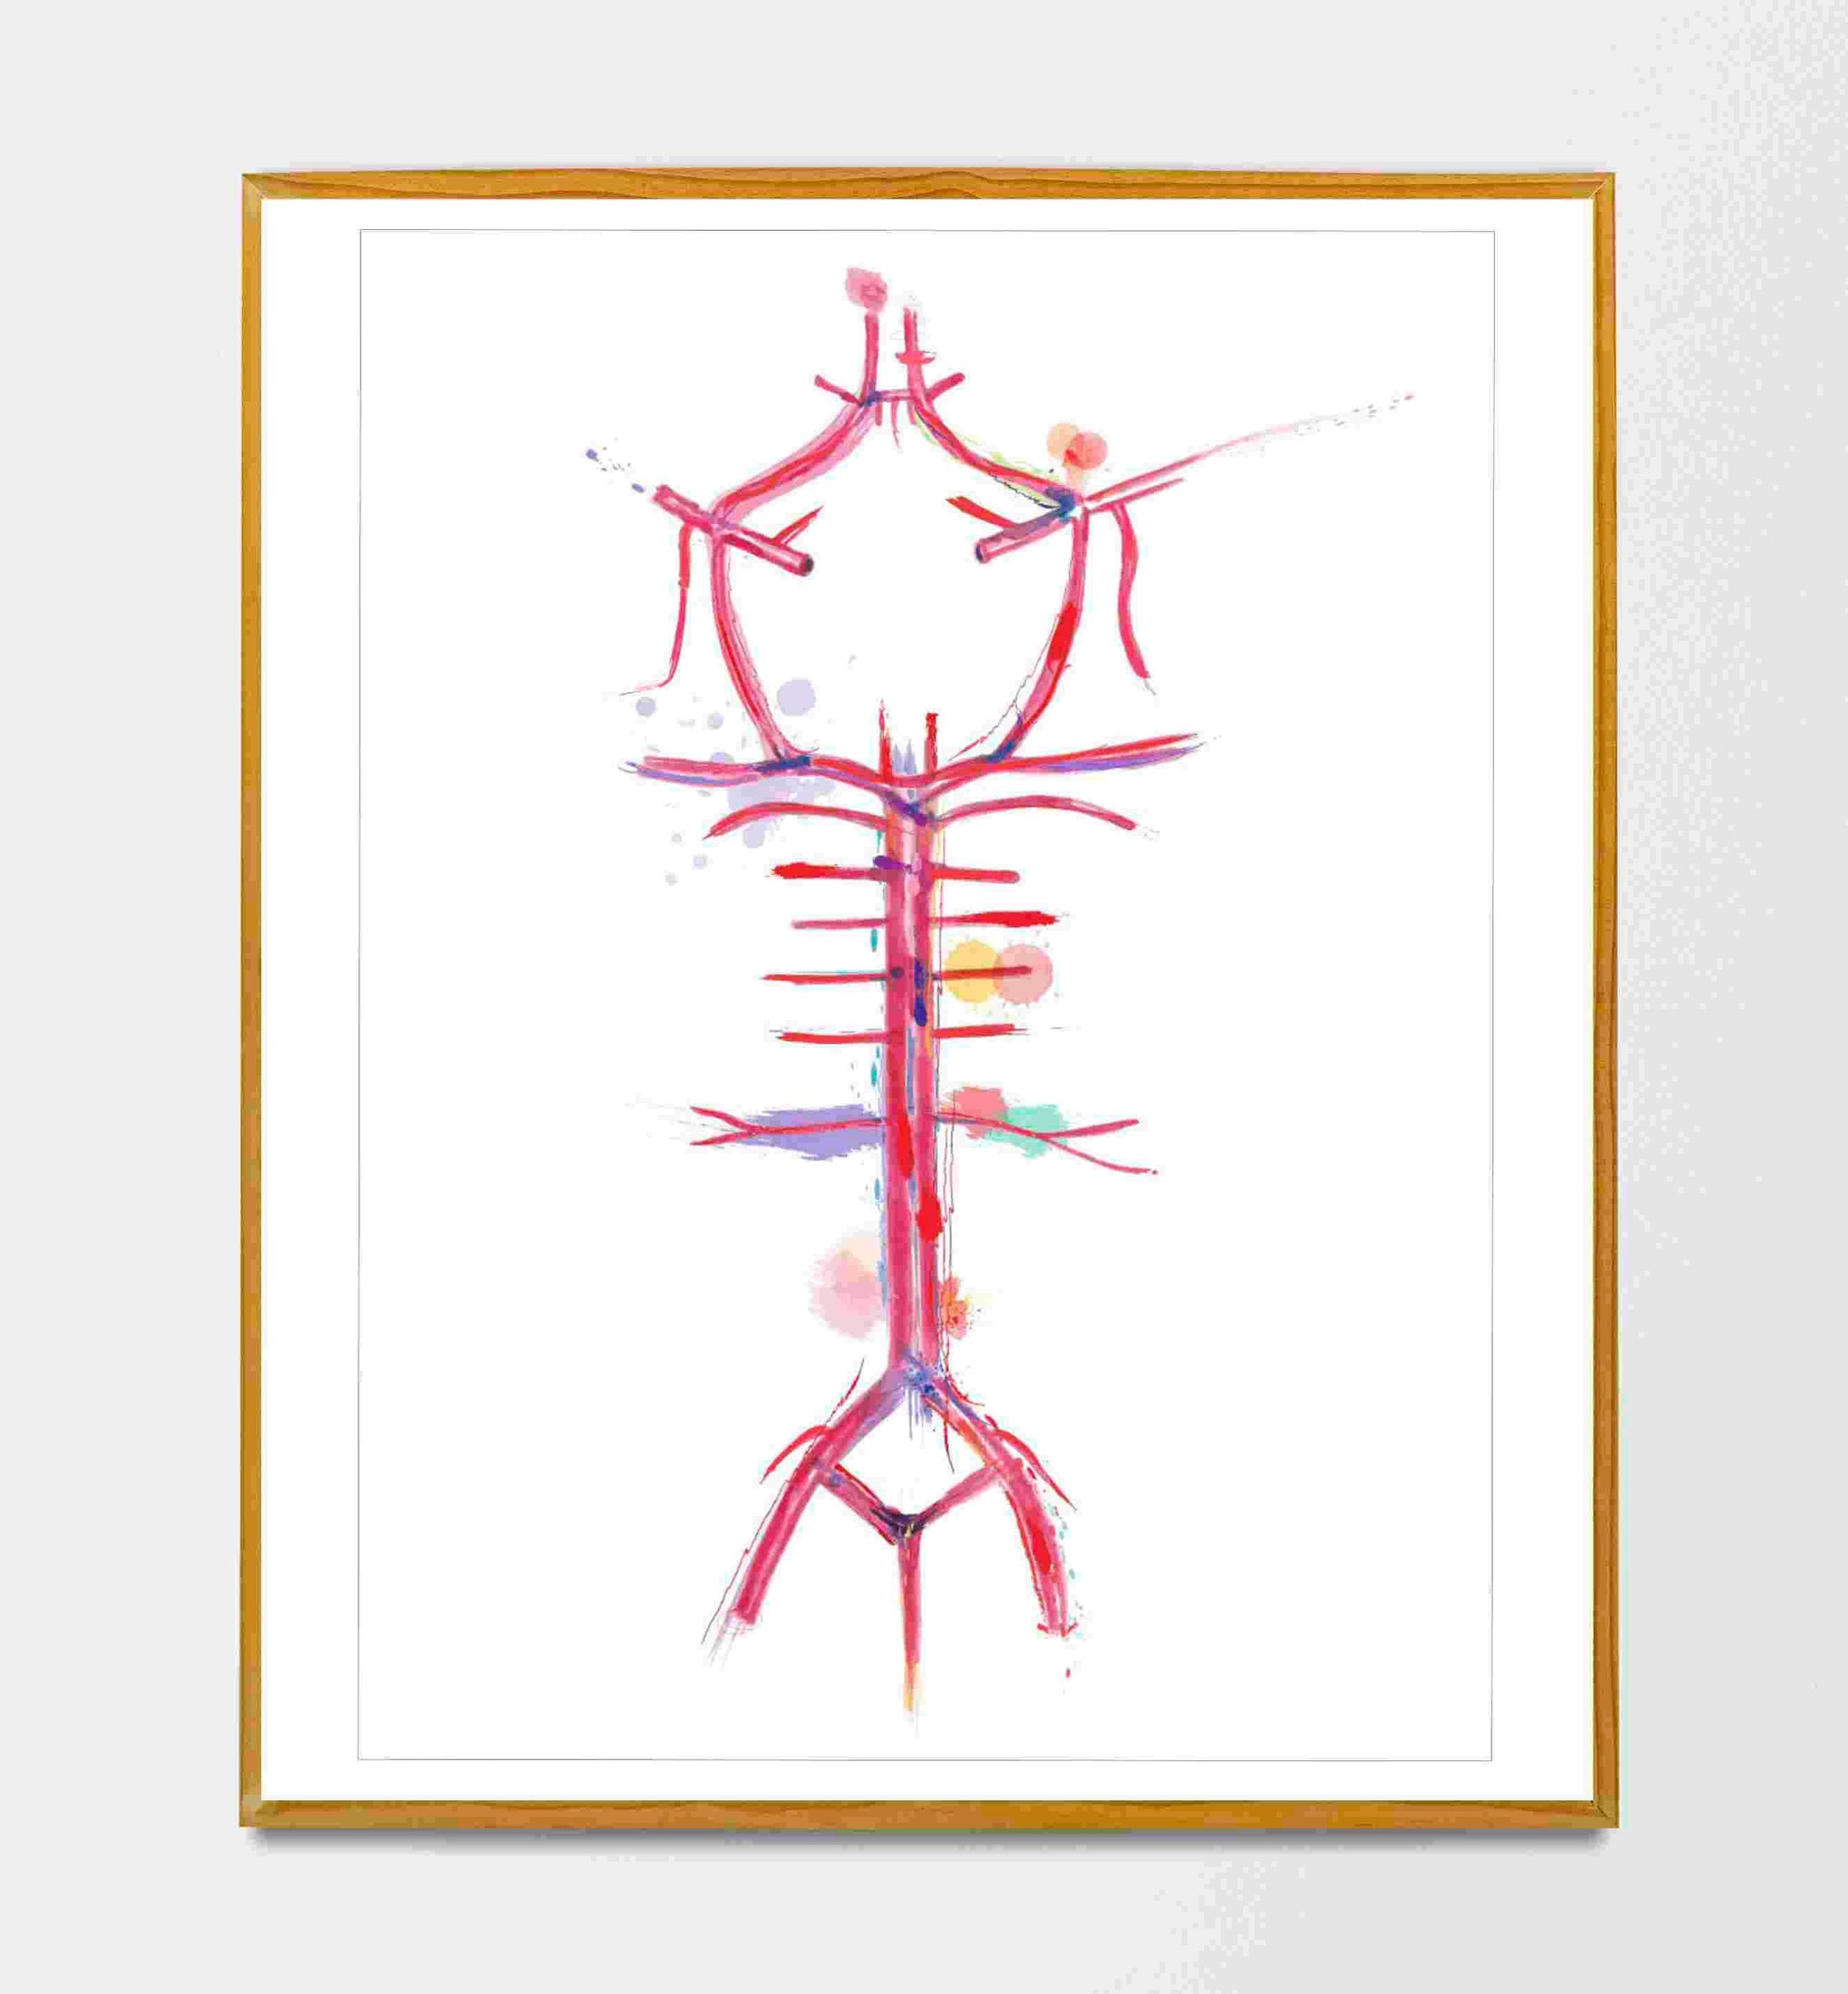 Circle of Willis, Brain Anatomy, Neurology Art, Neurologist Gift, Brain Wall Art, Brain Art Poster, Neuroscience Gift, Neuroscientist Art